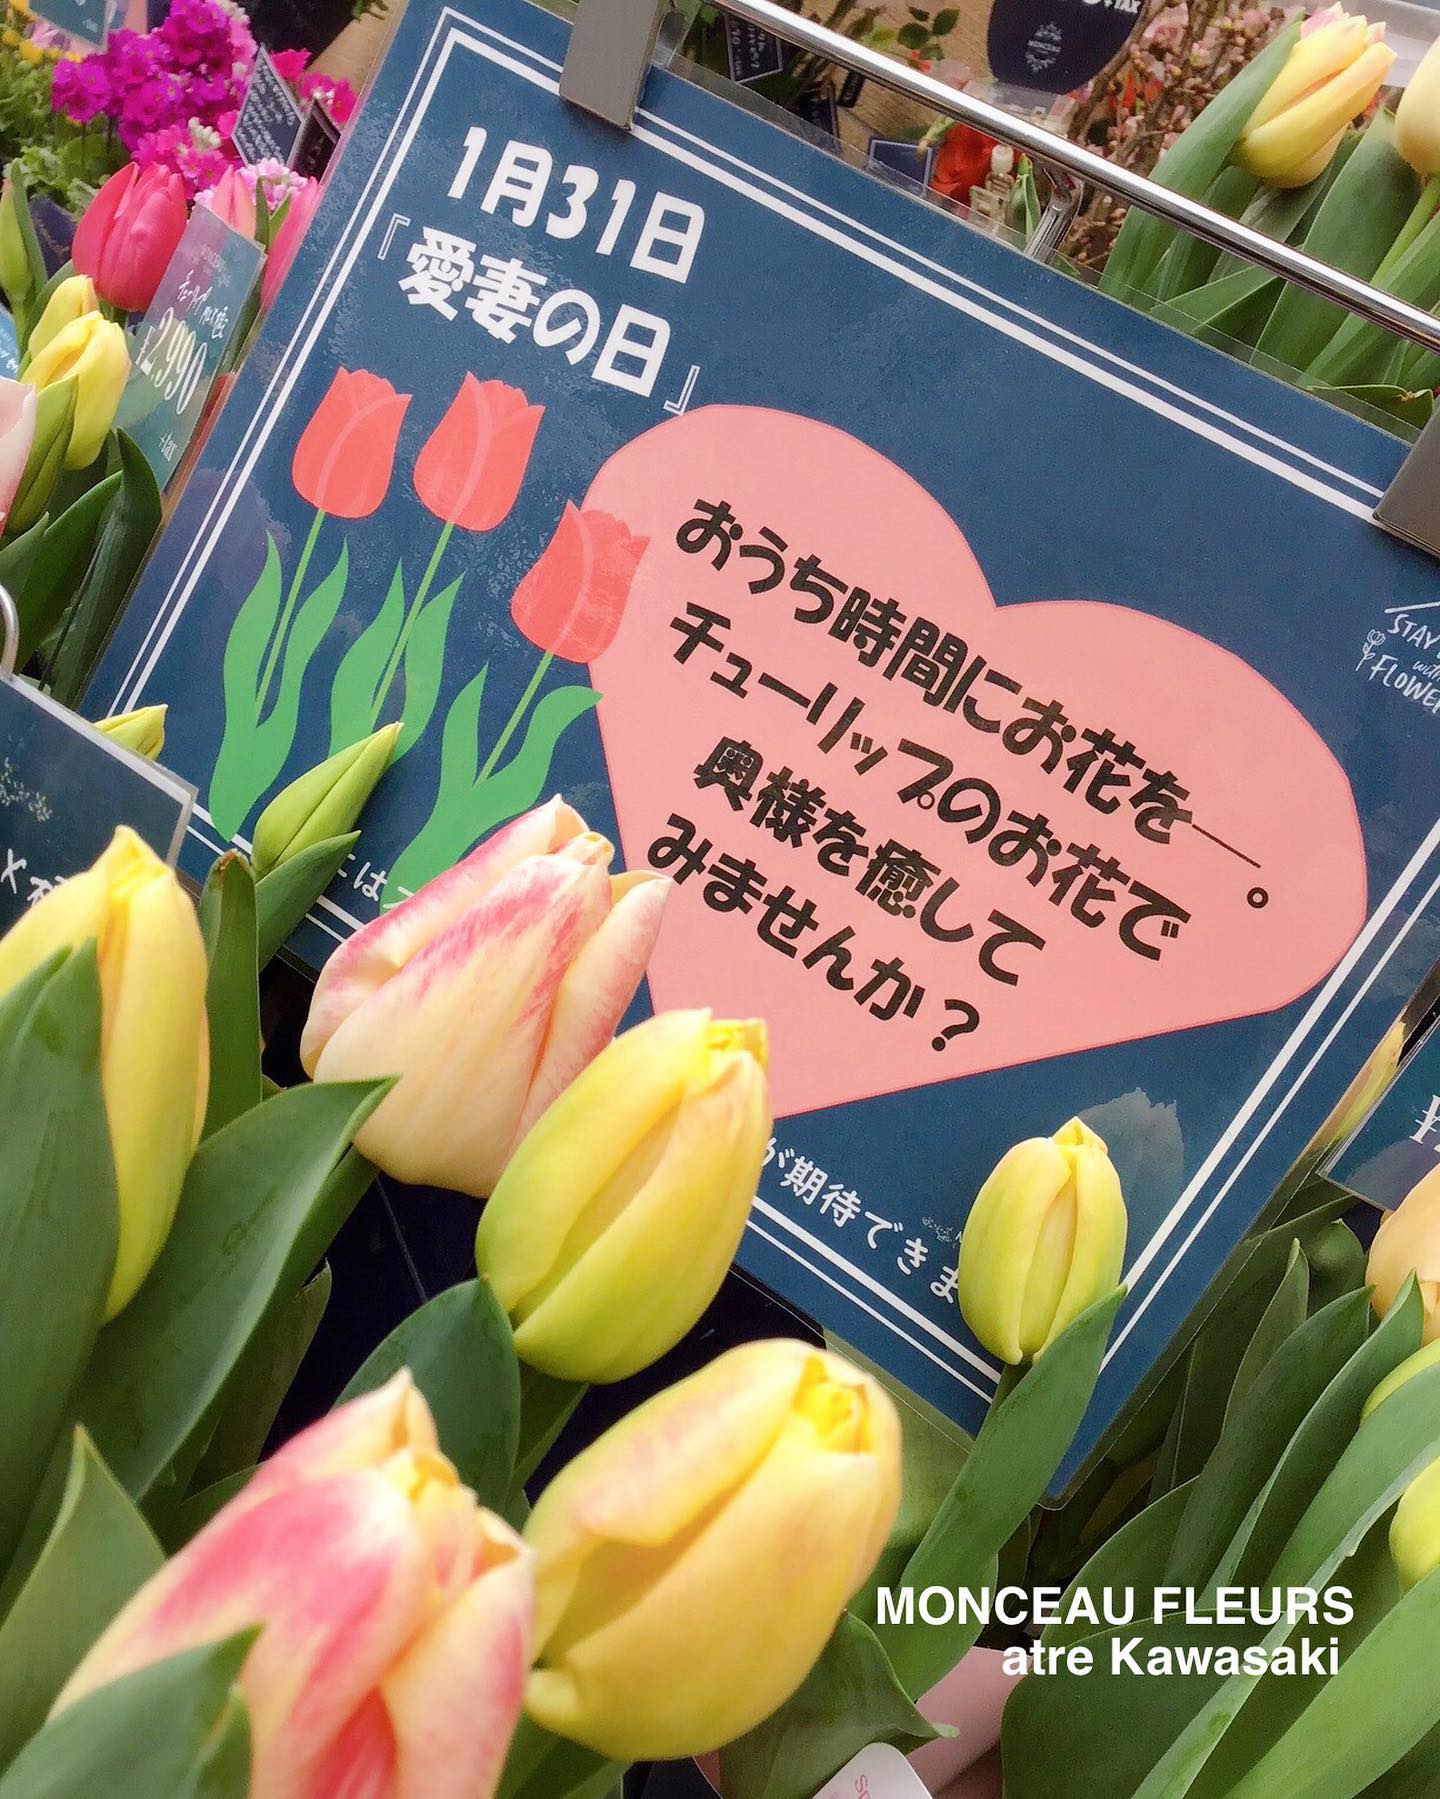 お花で奥様を癒しませんか？？？
1月31日は『愛妻の日』♪
・
愛する奥様にチューリップのお花を
贈りませんか？^_^
・
花言葉は、「思いやり」！
・
是非！チューリップと共に、日頃の感謝を伝えてみて下さい♪
・
モンソーフルール アトレ川崎店では、
チューリップの切り花・鉢植えをたっぷりご用意して、
お客様のご来店をお待ちしております♪
・
ステイホーム中の癒しにも是非！！！
"チューリップ"のお花をオススメ致します♪
・
#チューリップ
#ブーケ #フラワーアレンジメント
#フラワーショップ
#パリ
#プリザーブドフラワー
・
お気軽にお問い合わせください♪
★★★★★★★★★★★★★★★
【モンソーフルール アトレ川崎店】
〒210-0007
神奈川県川崎市川崎区駅前本町26-1
アトレ川崎1F
TEL&FAX:044-200-6701
営業時間:10:00〜20:00
＊緊急事態宣言に伴い
当面の間、時短営業中
★★★★★★★★★★★★★★★
モンソーフルールはパリ発！
ヨーロッパ有数のフラワーチェーンブランドです♪